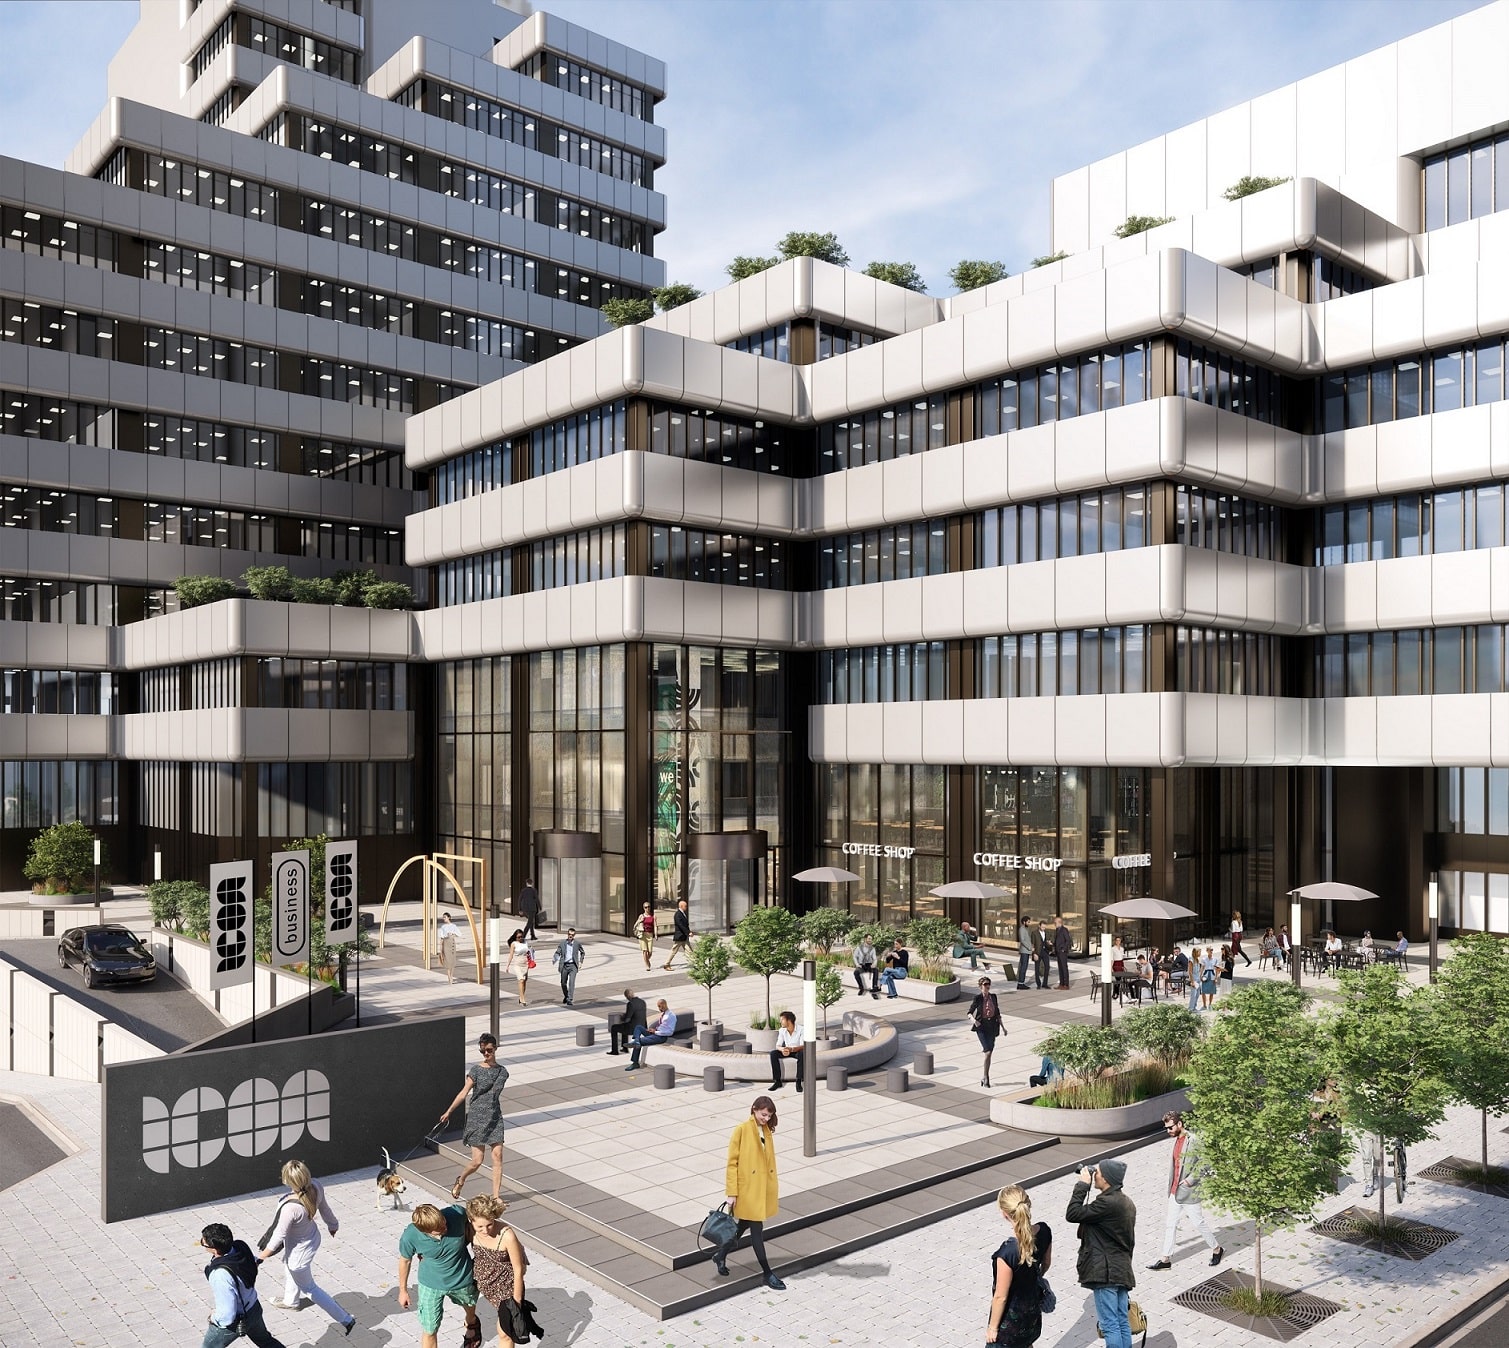 Covivio Office belebt Ikone in Düsseldorf neu - aus den Herzogterrassen wird ICON